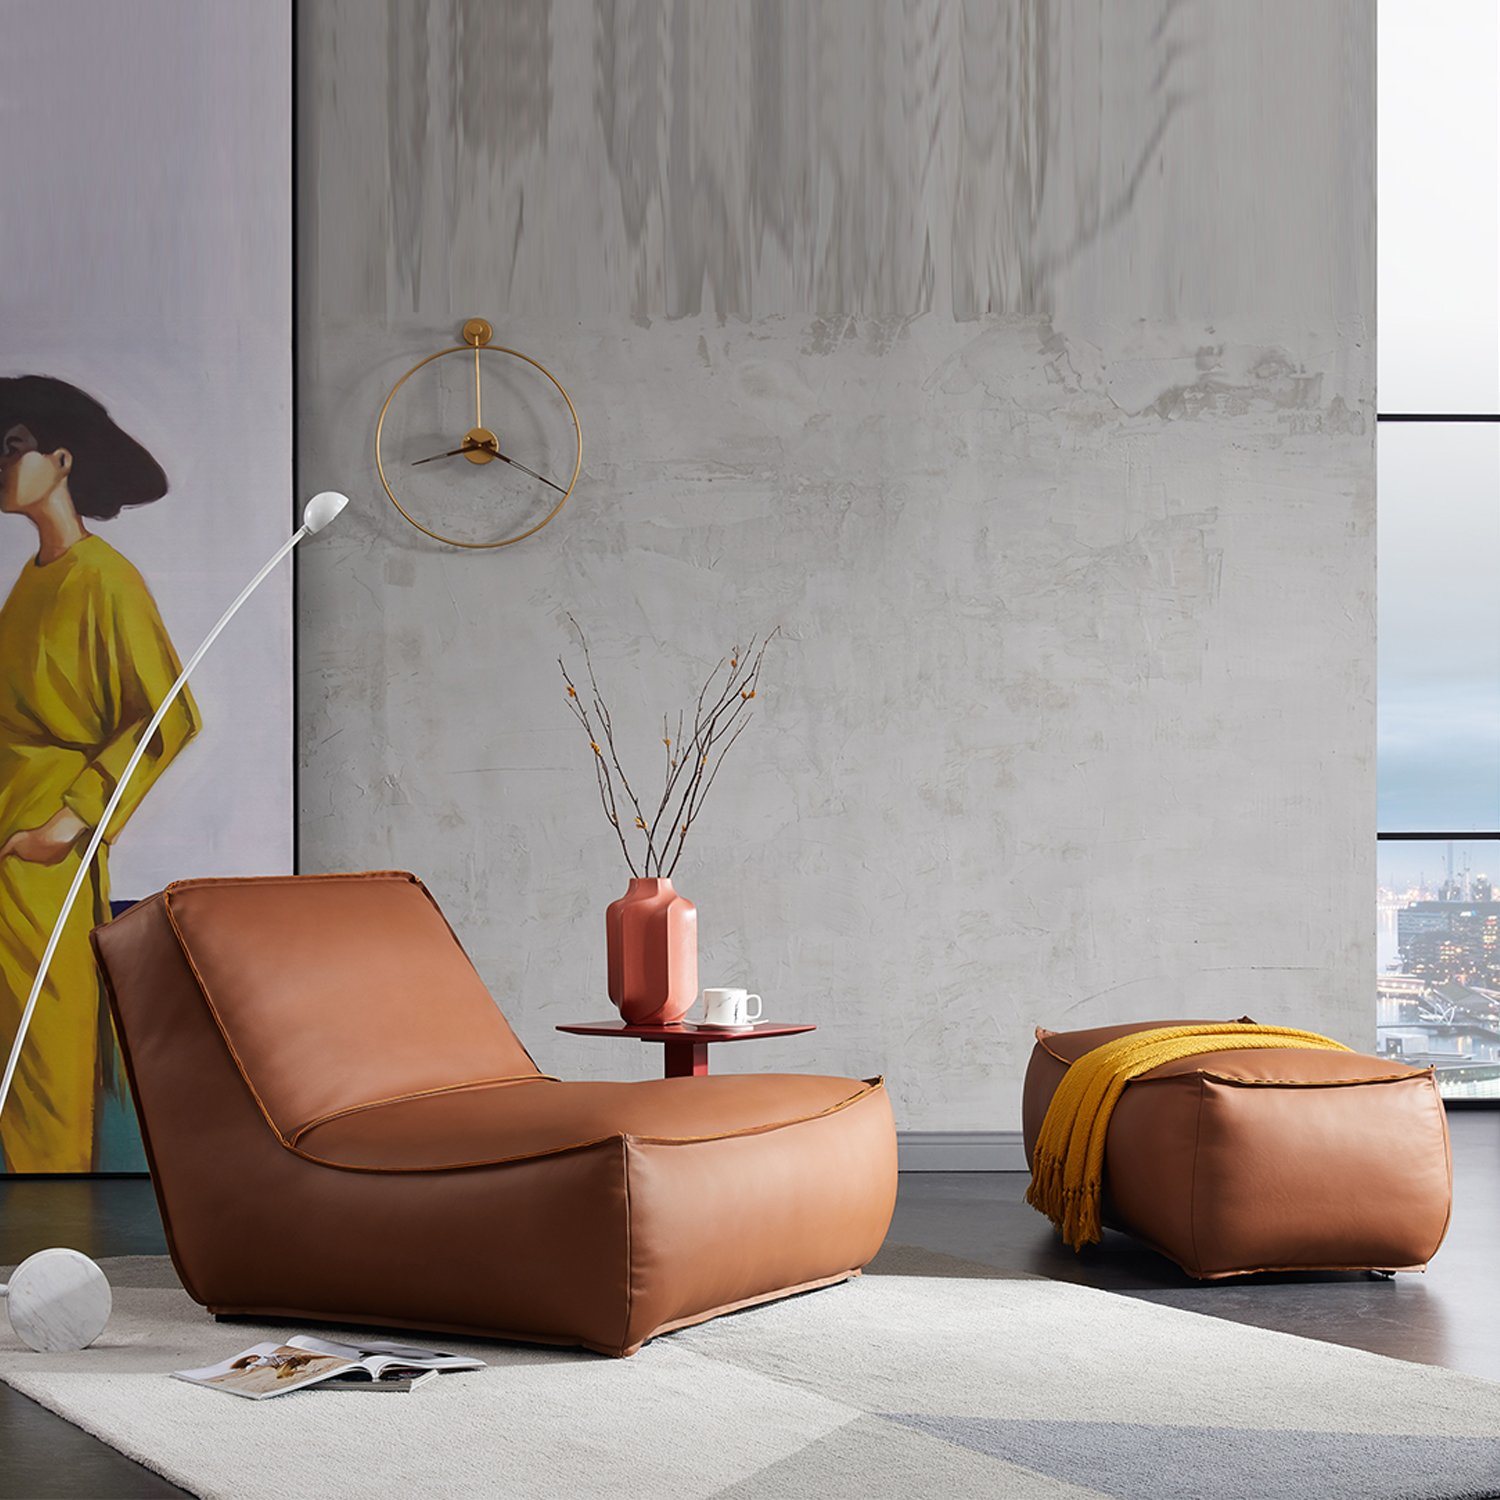 Modern Design Leisure Chair Home Furniture